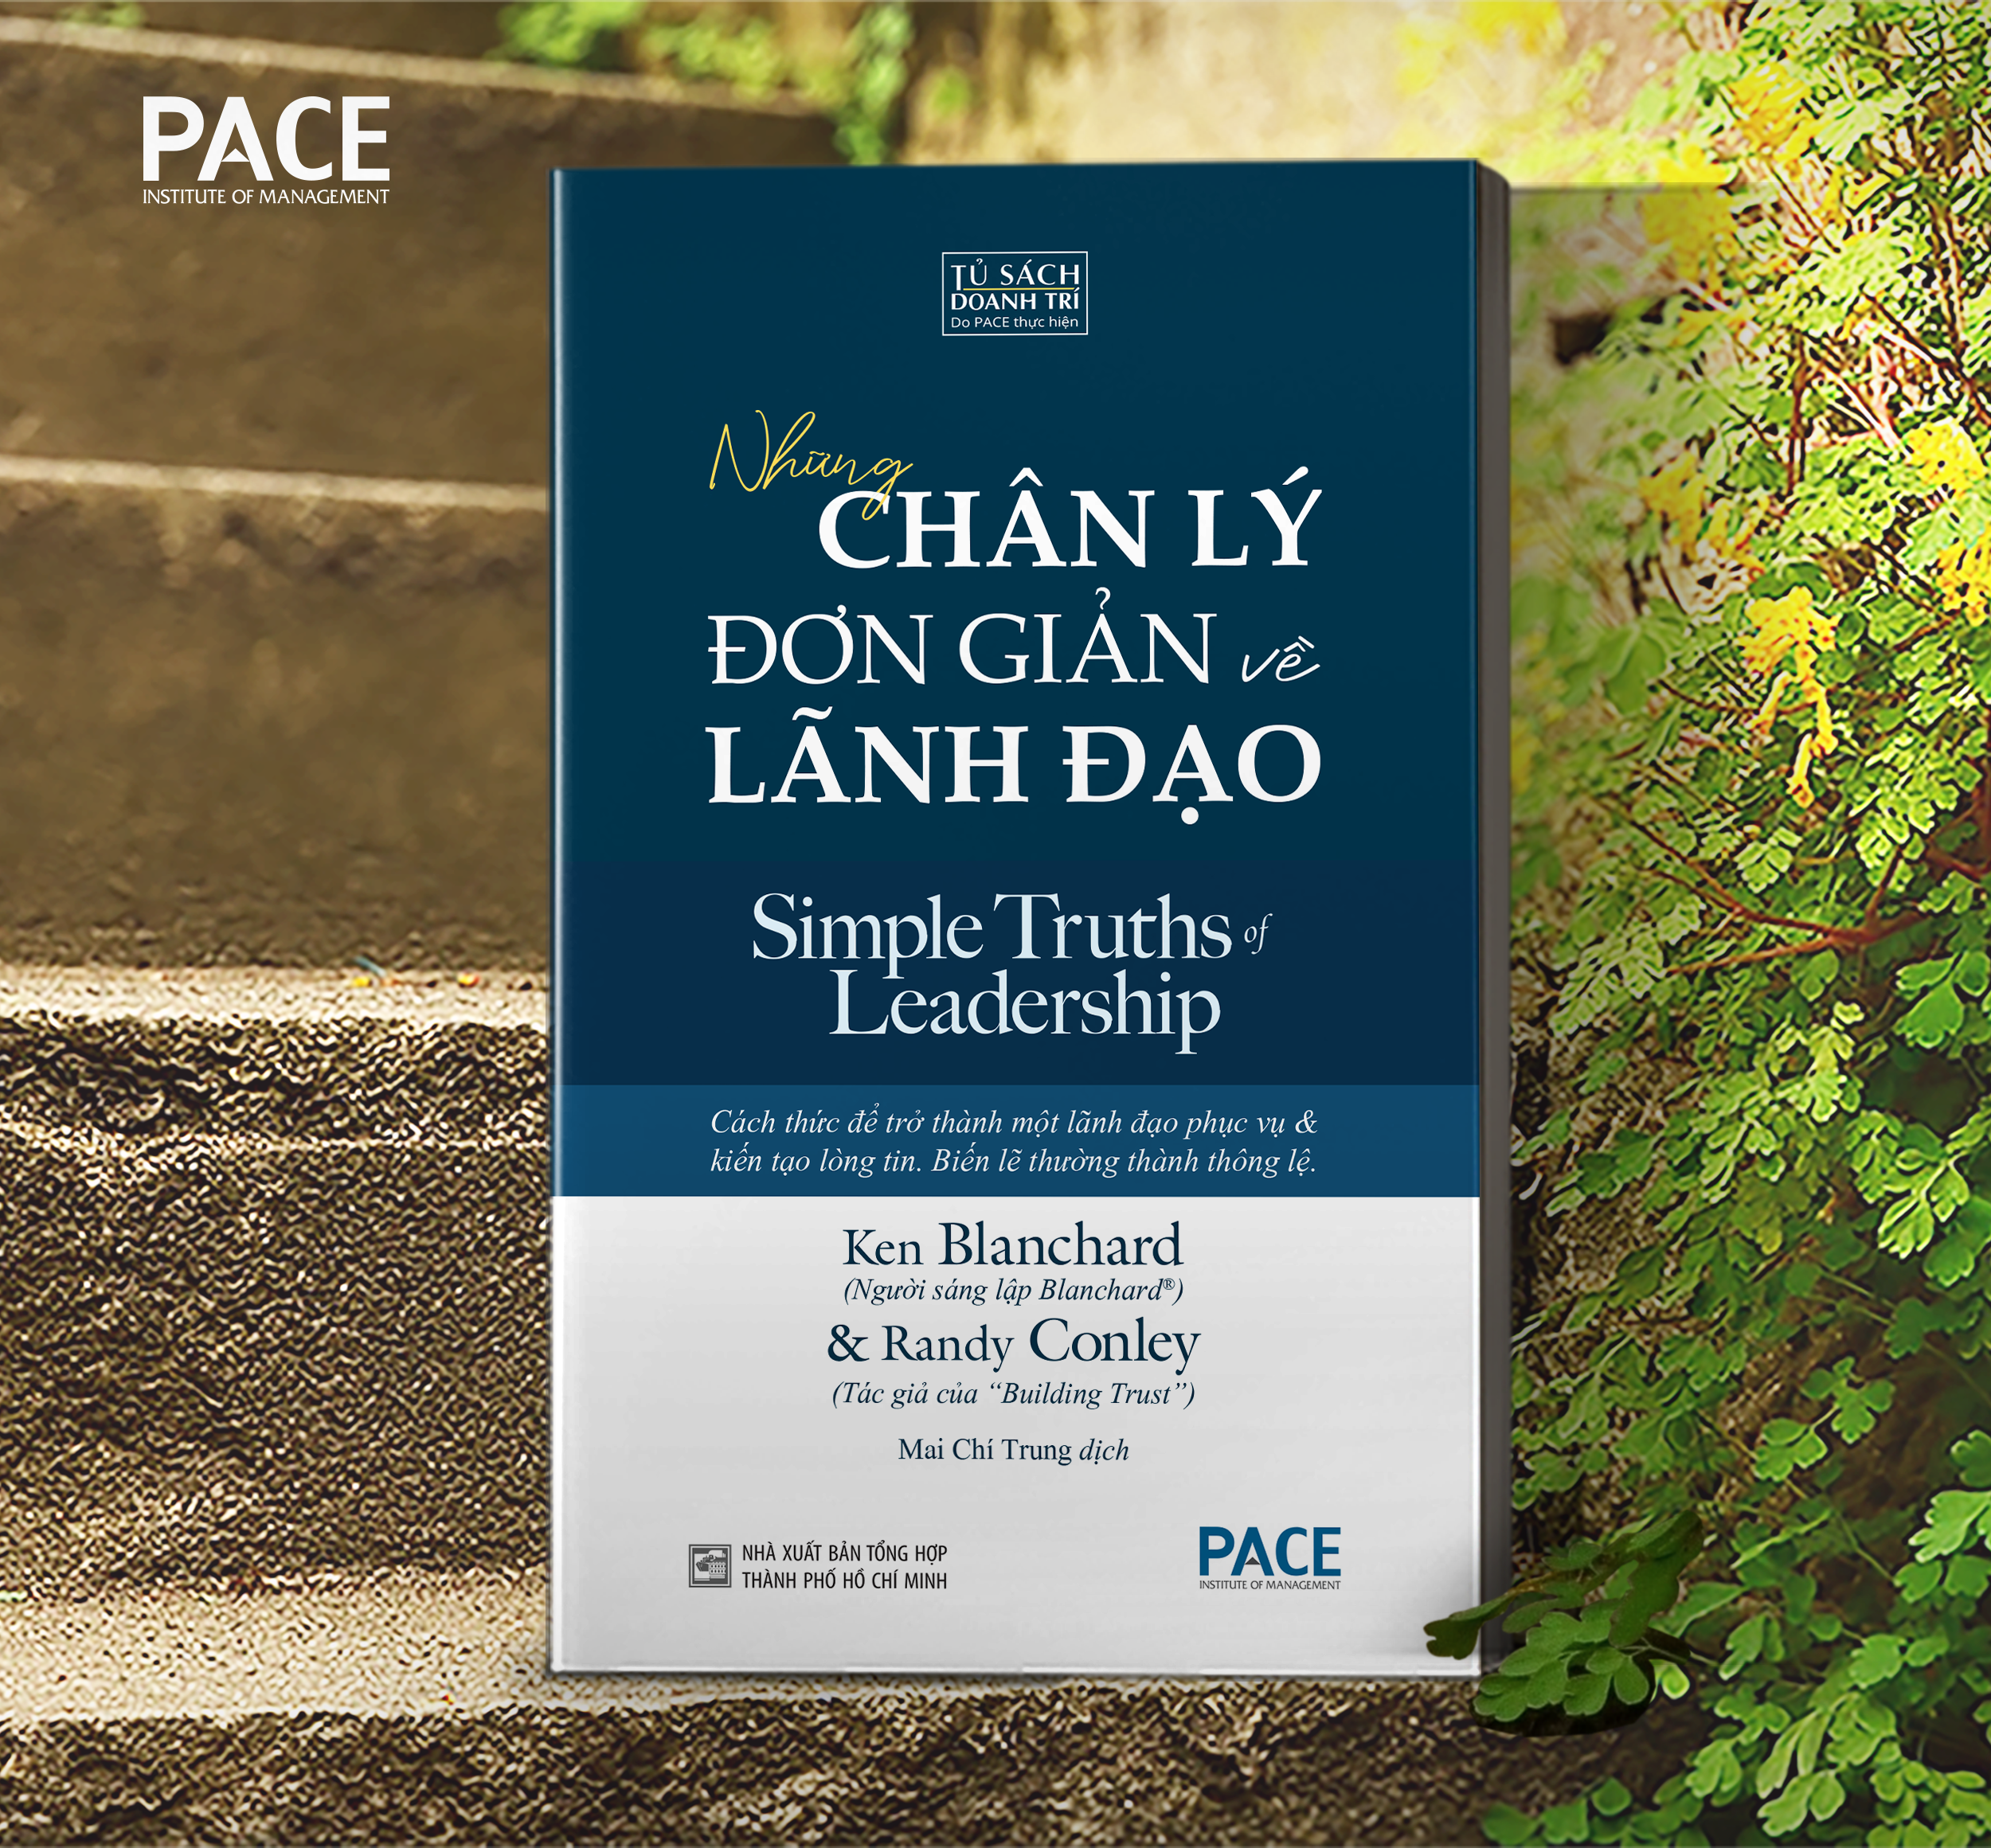 NHỮNG CHÂN LÝ ĐƠN GIẢN VỀ LÃNH ĐẠO (Simple Truths of Leadership) - Ken Blanchard và Randy Conley - Mai Chí Trung dịch - (bìa mềm)